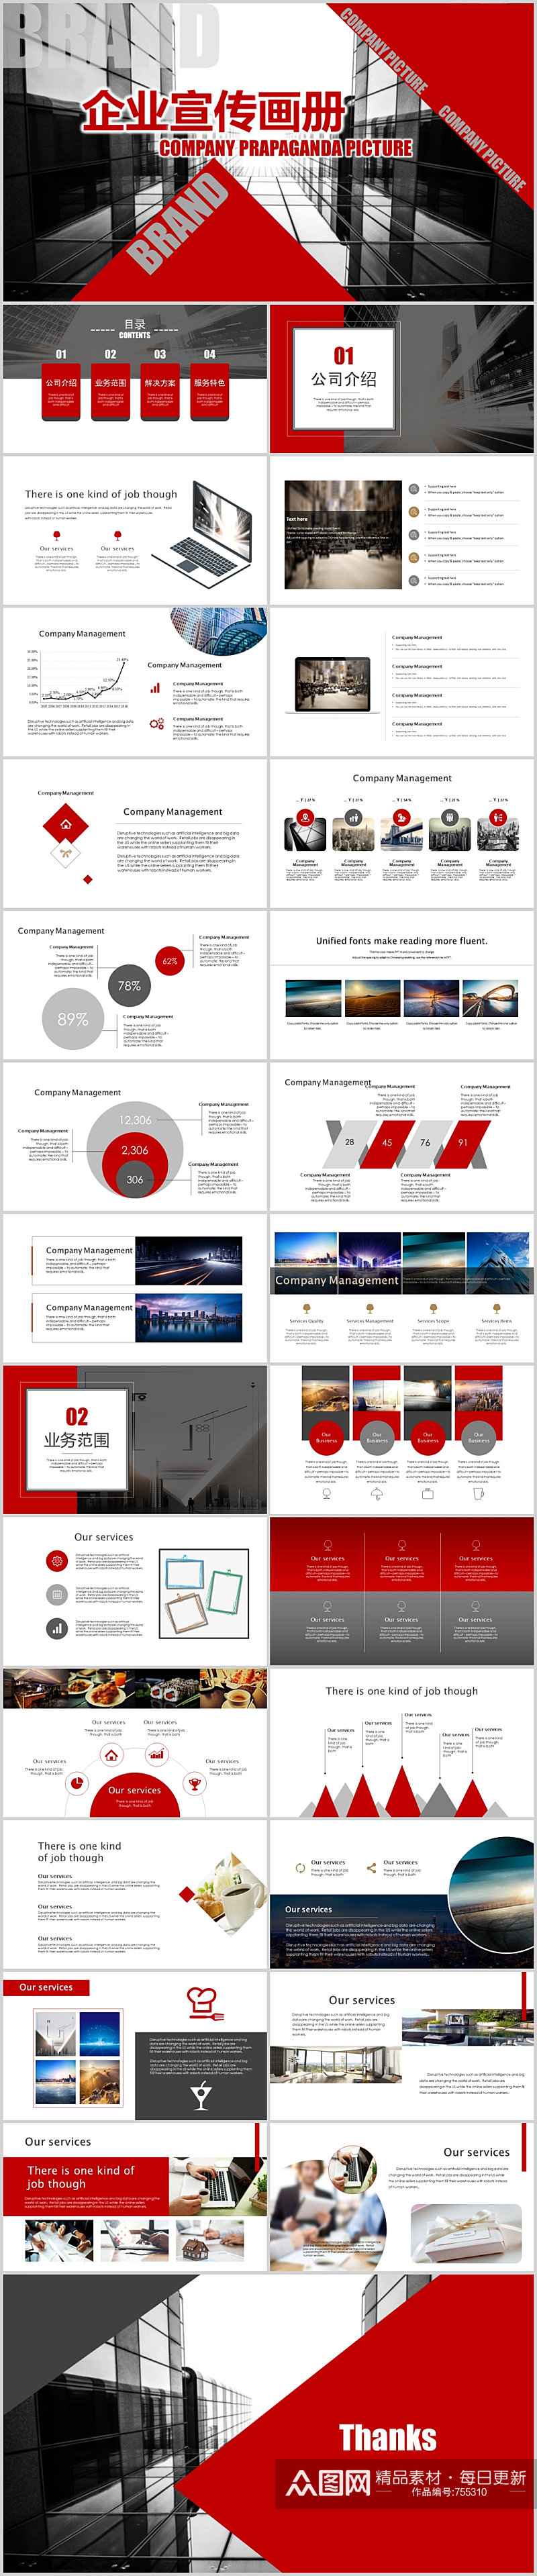 红蓝企业品牌介绍宣传推广画册模板素材